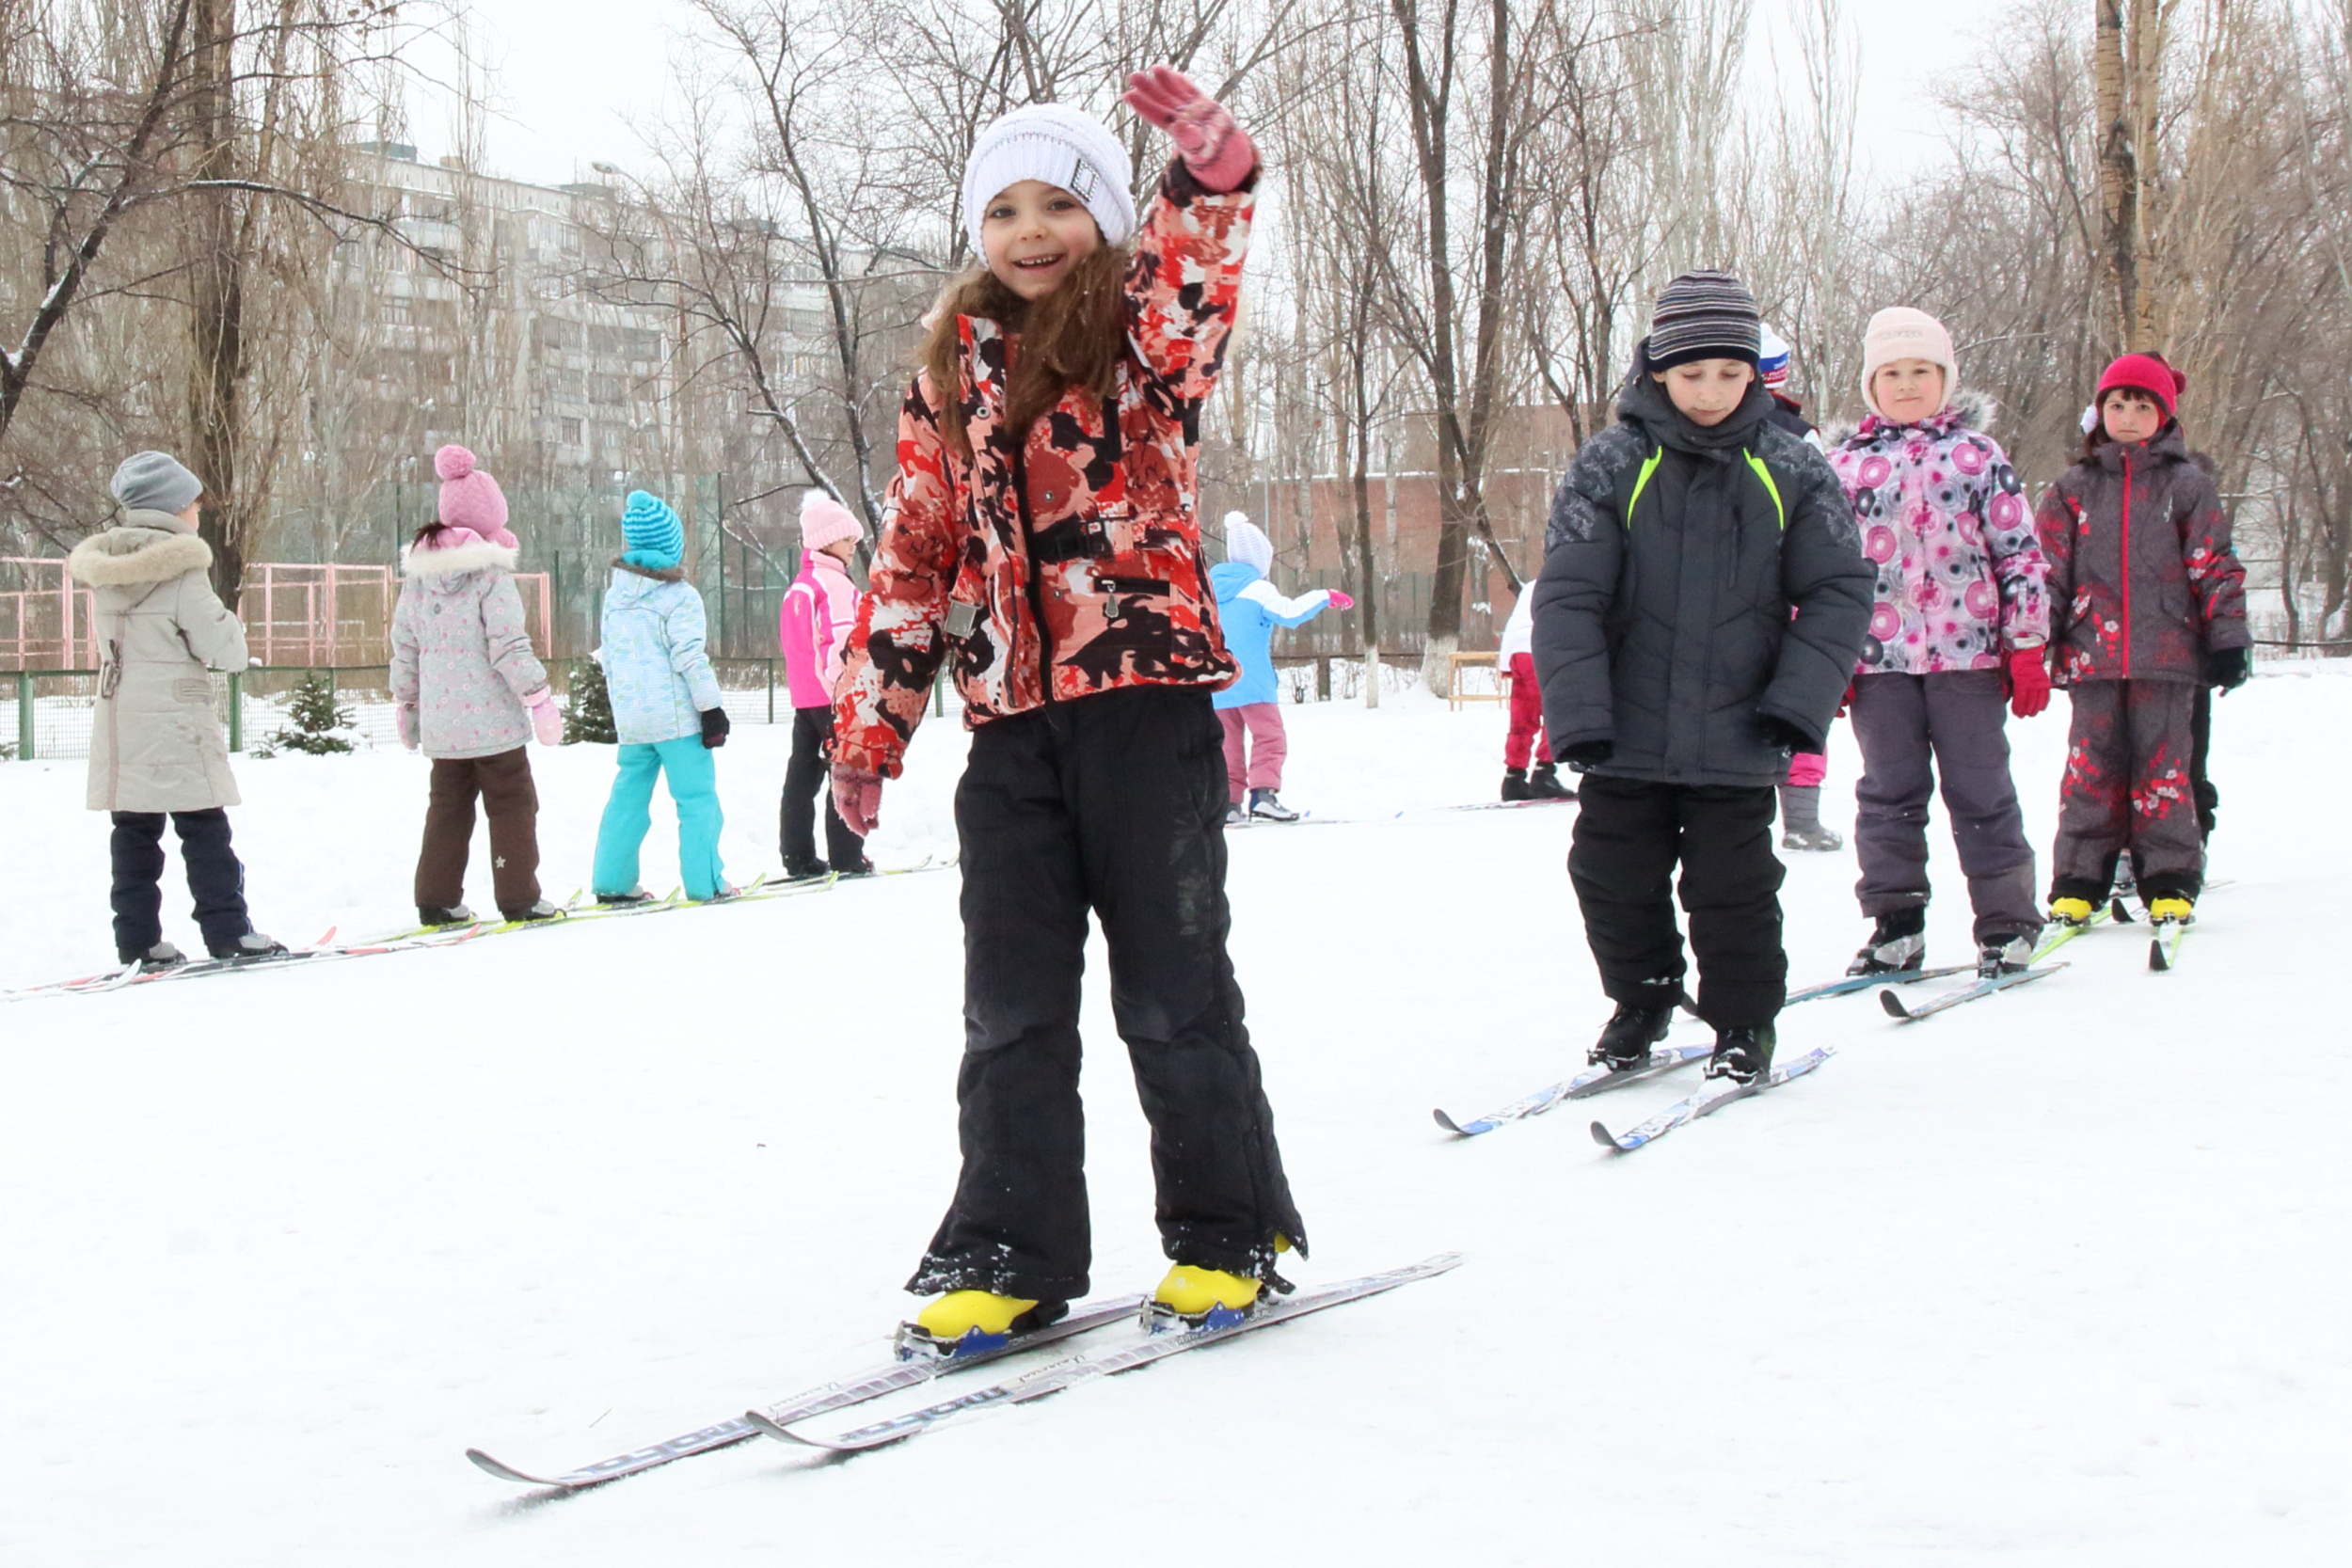 Лыжи ребенку в школу. Лыжи в школе. Занятия на лыжах в школе. Школьники на лыжах. Дети на лыжах в школе.